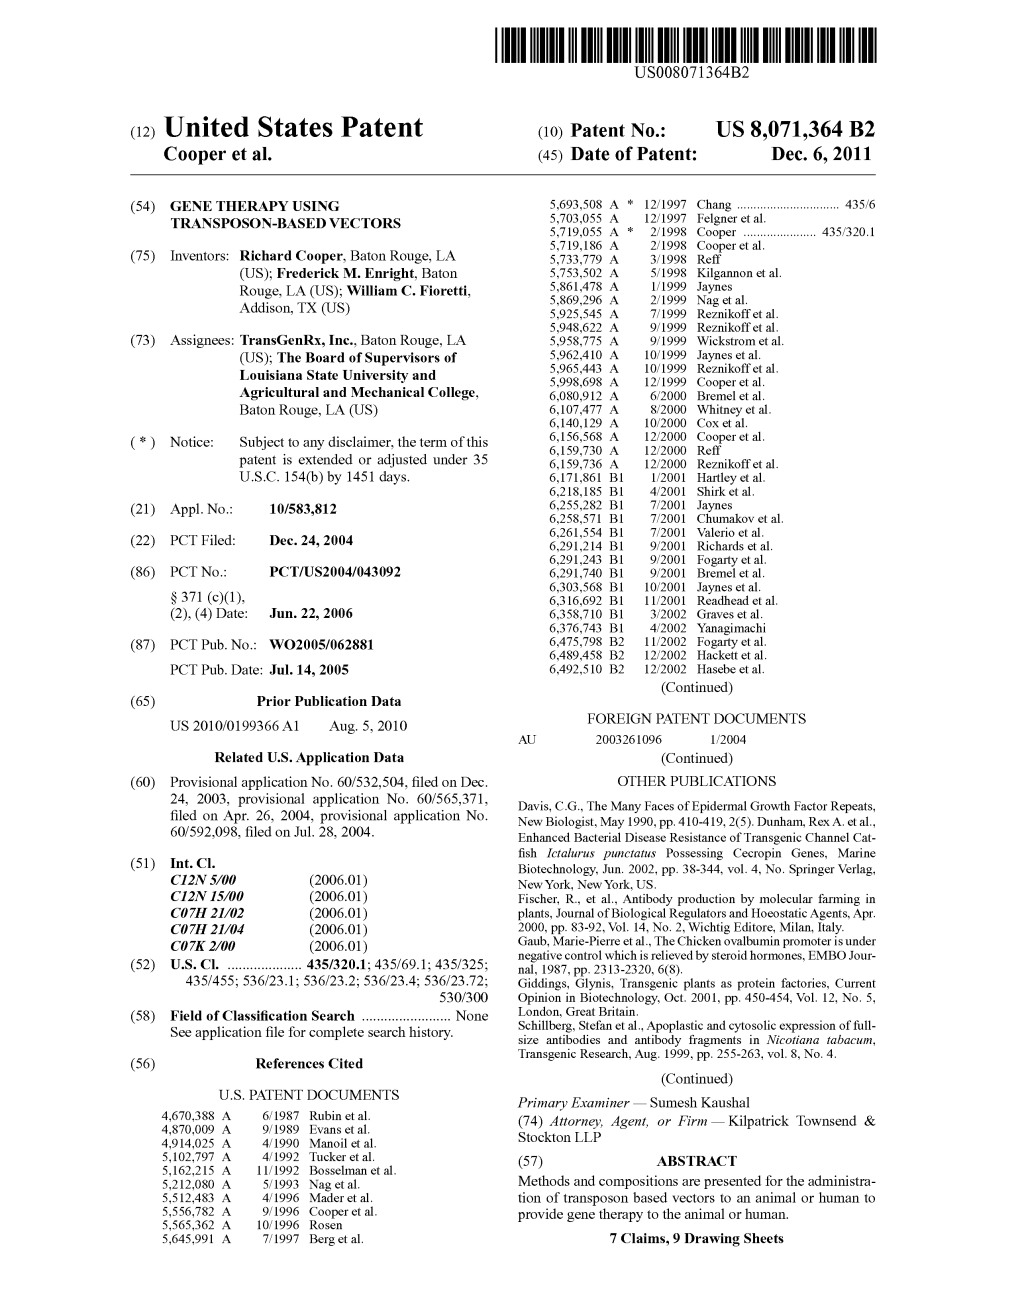 (12) United States Patent (10) Patent No.: US 8,071,364 B2 Cooper Et Al